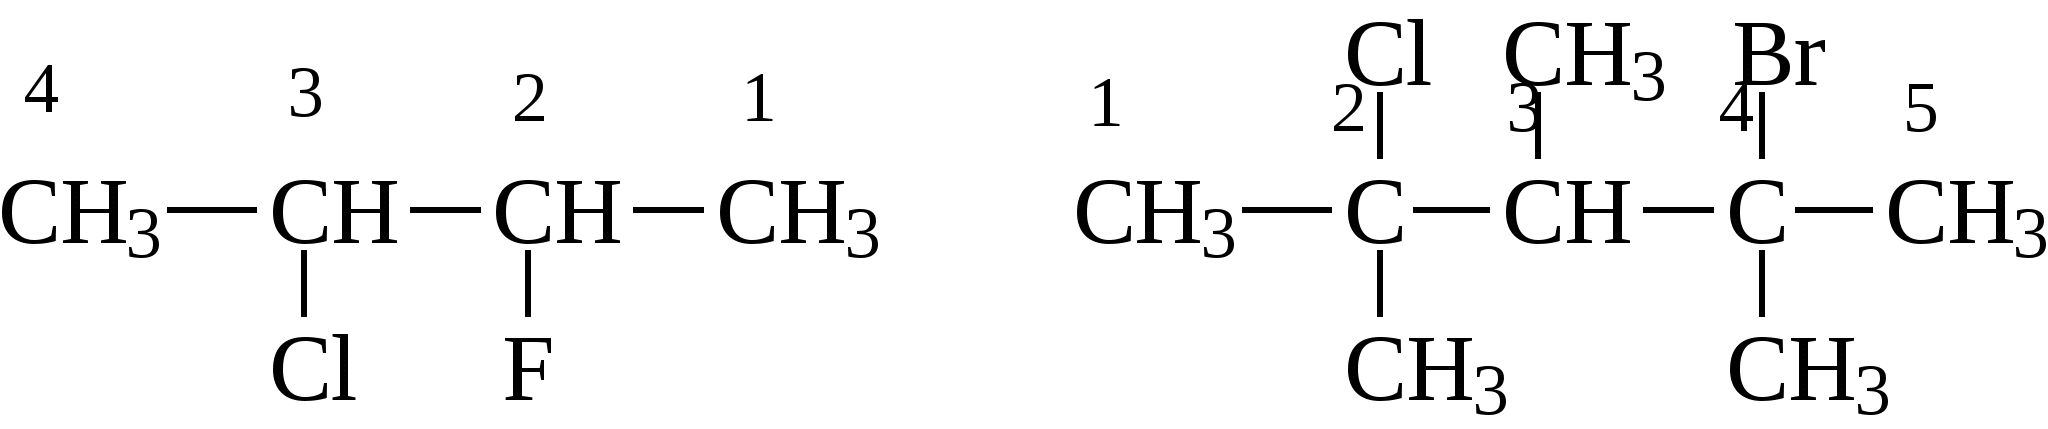 3 бром 2 метил. 2 3 Хлорбутан. 2 Метил 1 хлорбутан. 2 Метил 3 хлорбутан. 3-Хлорбутана.